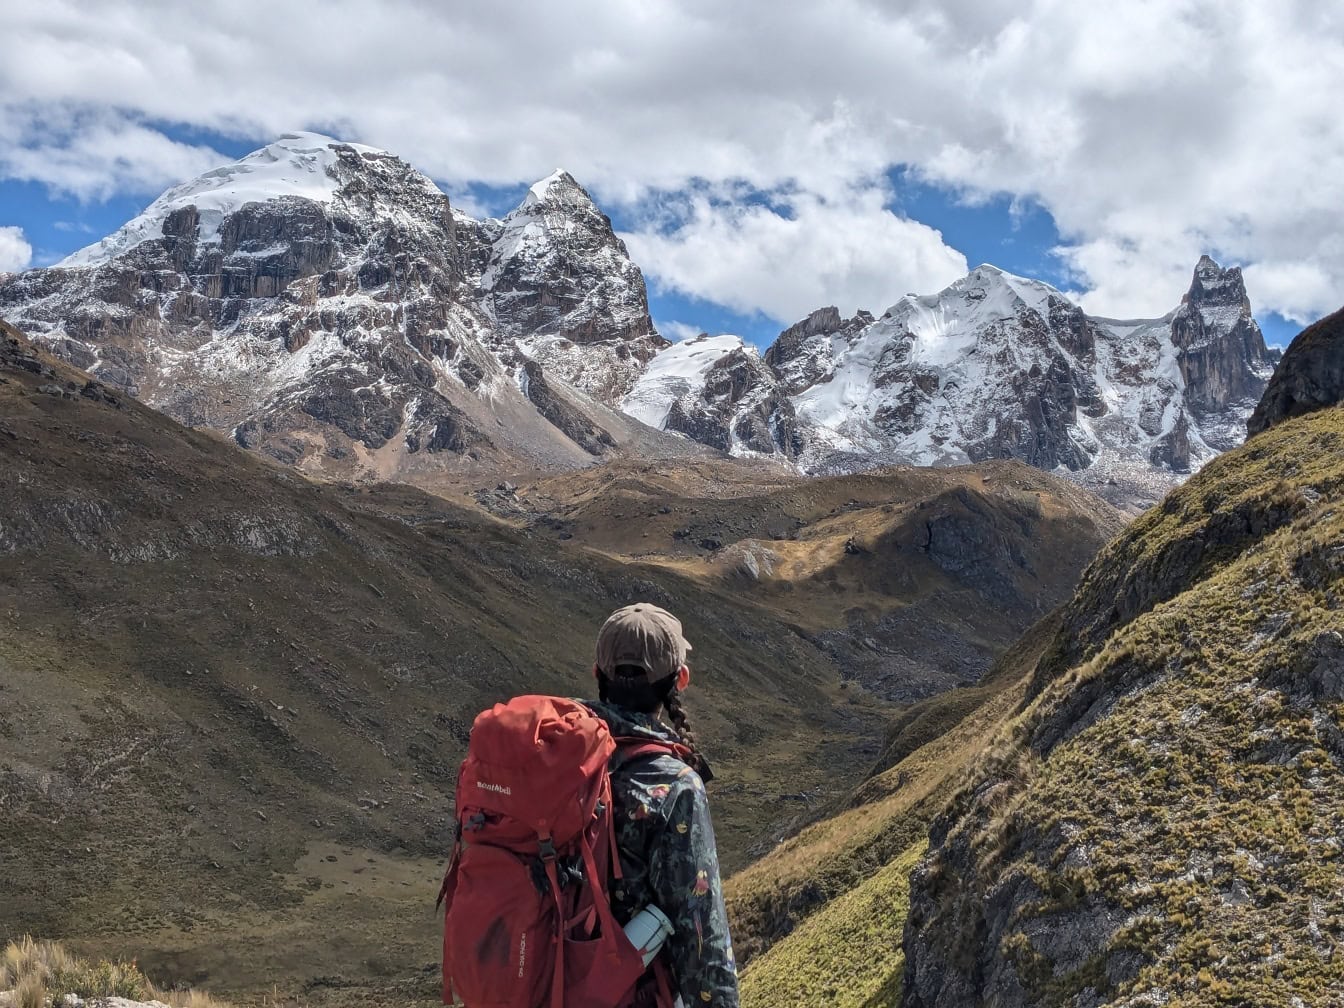 Турист с рюкзаком смотрит на долину со снежными горными вершинами в горном хребте Кордильера-Уайуаш в Перу